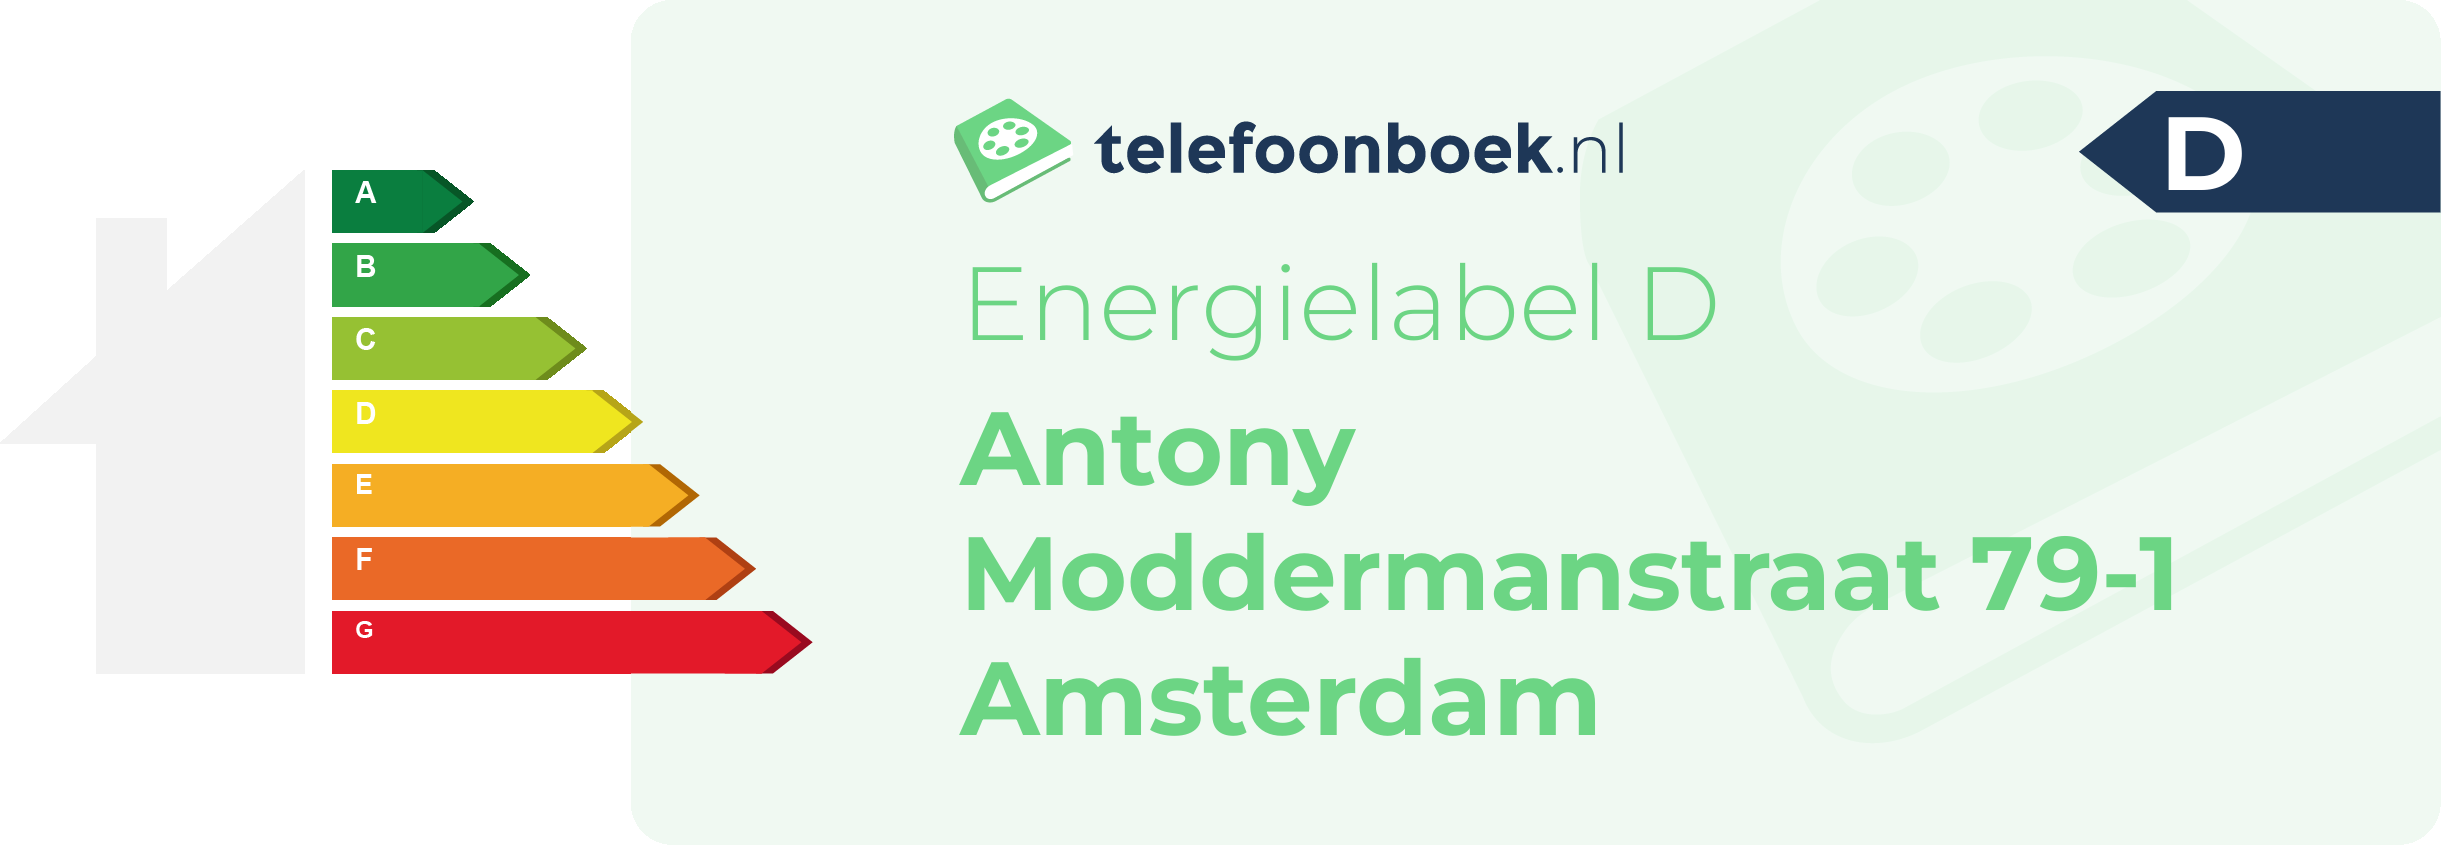 Energielabel Antony Moddermanstraat 79-1 Amsterdam